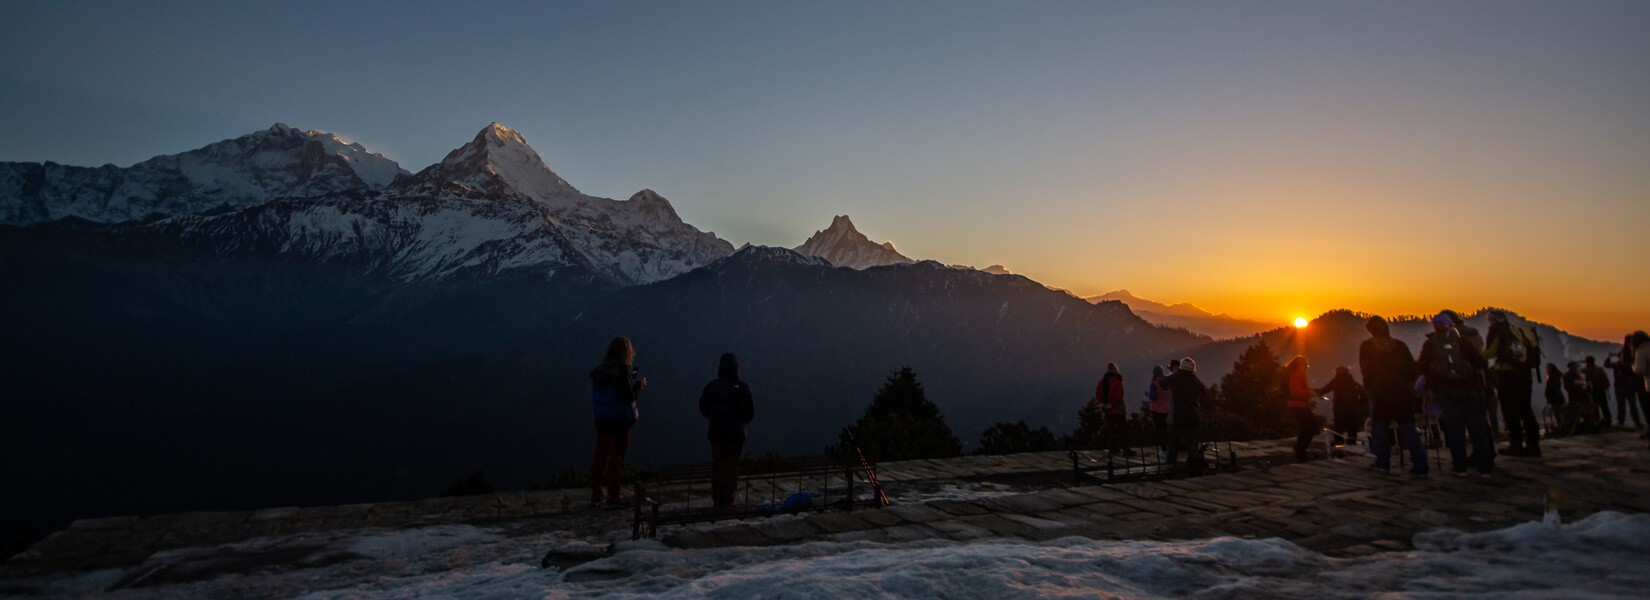 Ghorepani Poon Hill Trek | Himalayan Ecological Trekking